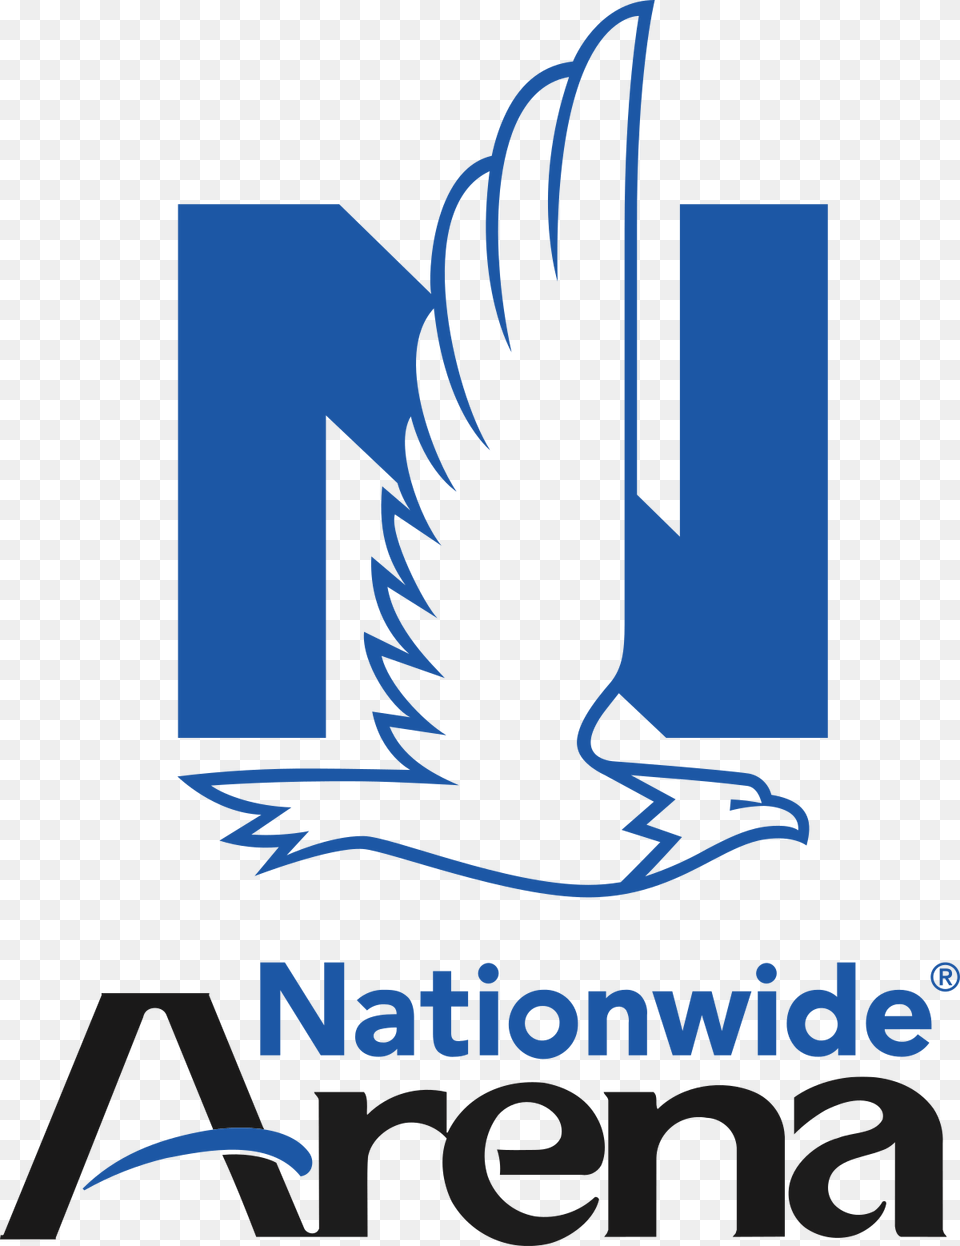 Nationwide Arena, Logo, Animal, Bird, Jay Png Image